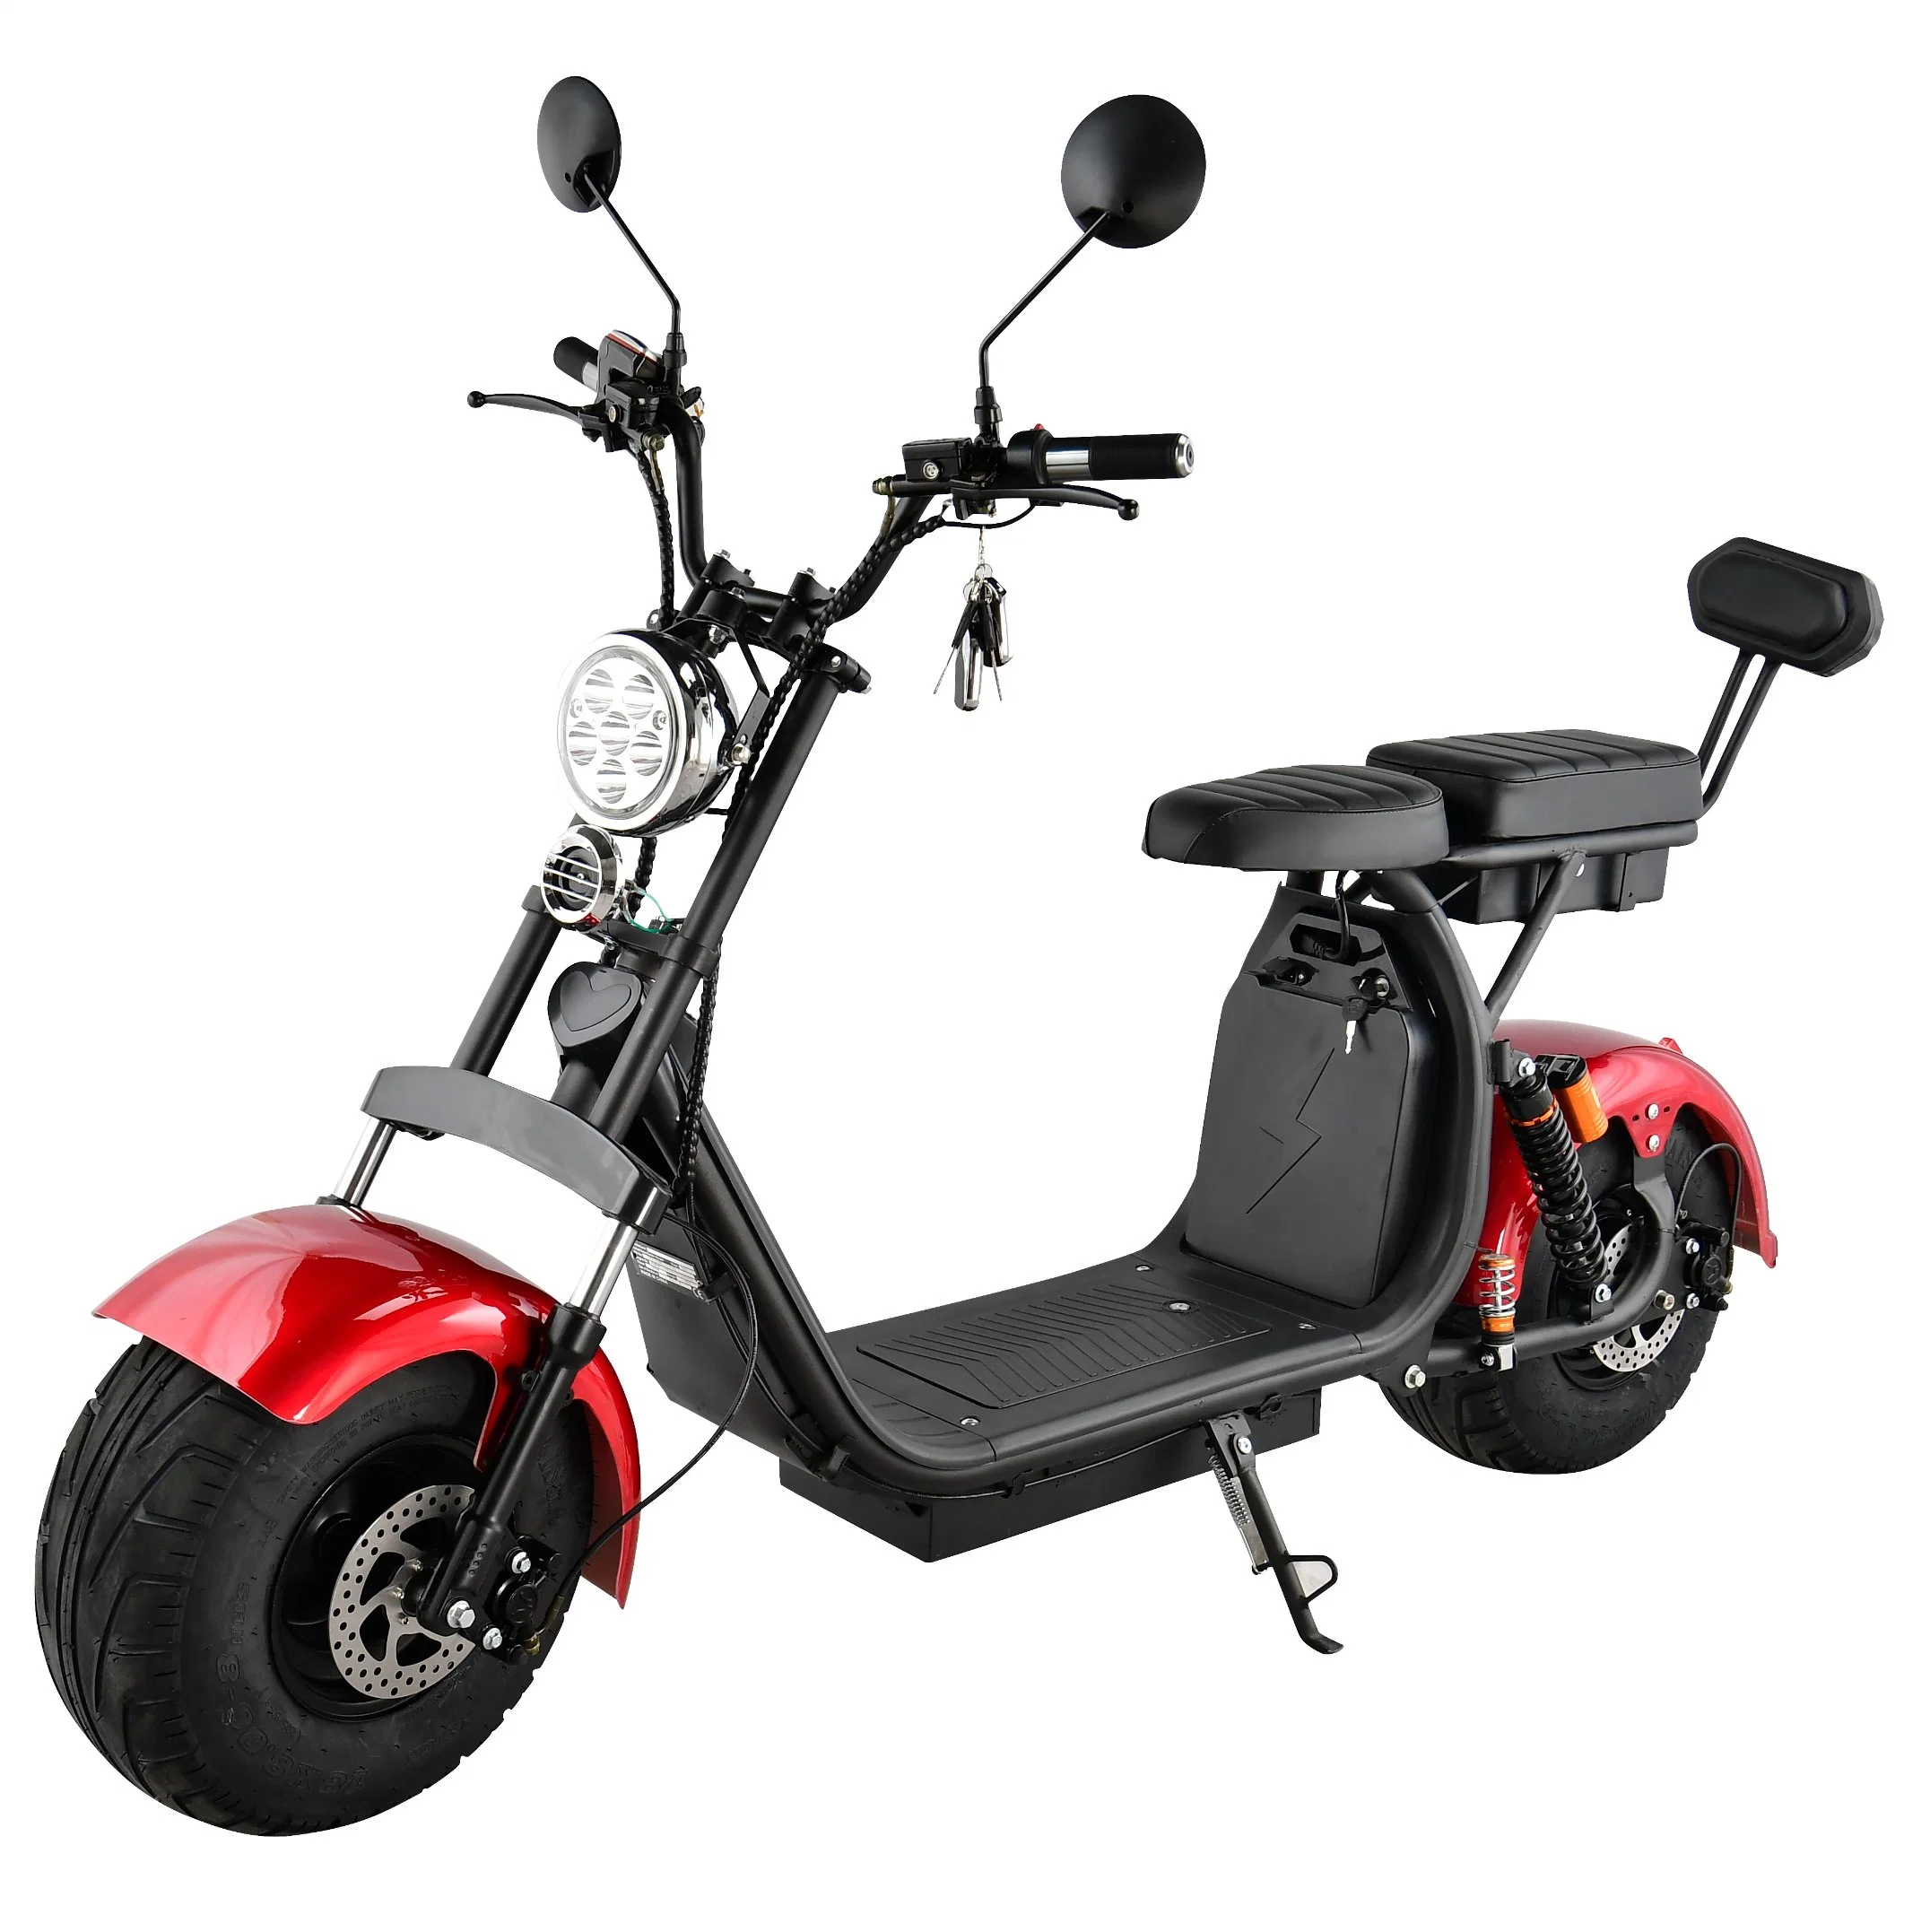 Cee/COC de la mobilité électrique scooter de vélo de moteur de pliage Scooter électrique